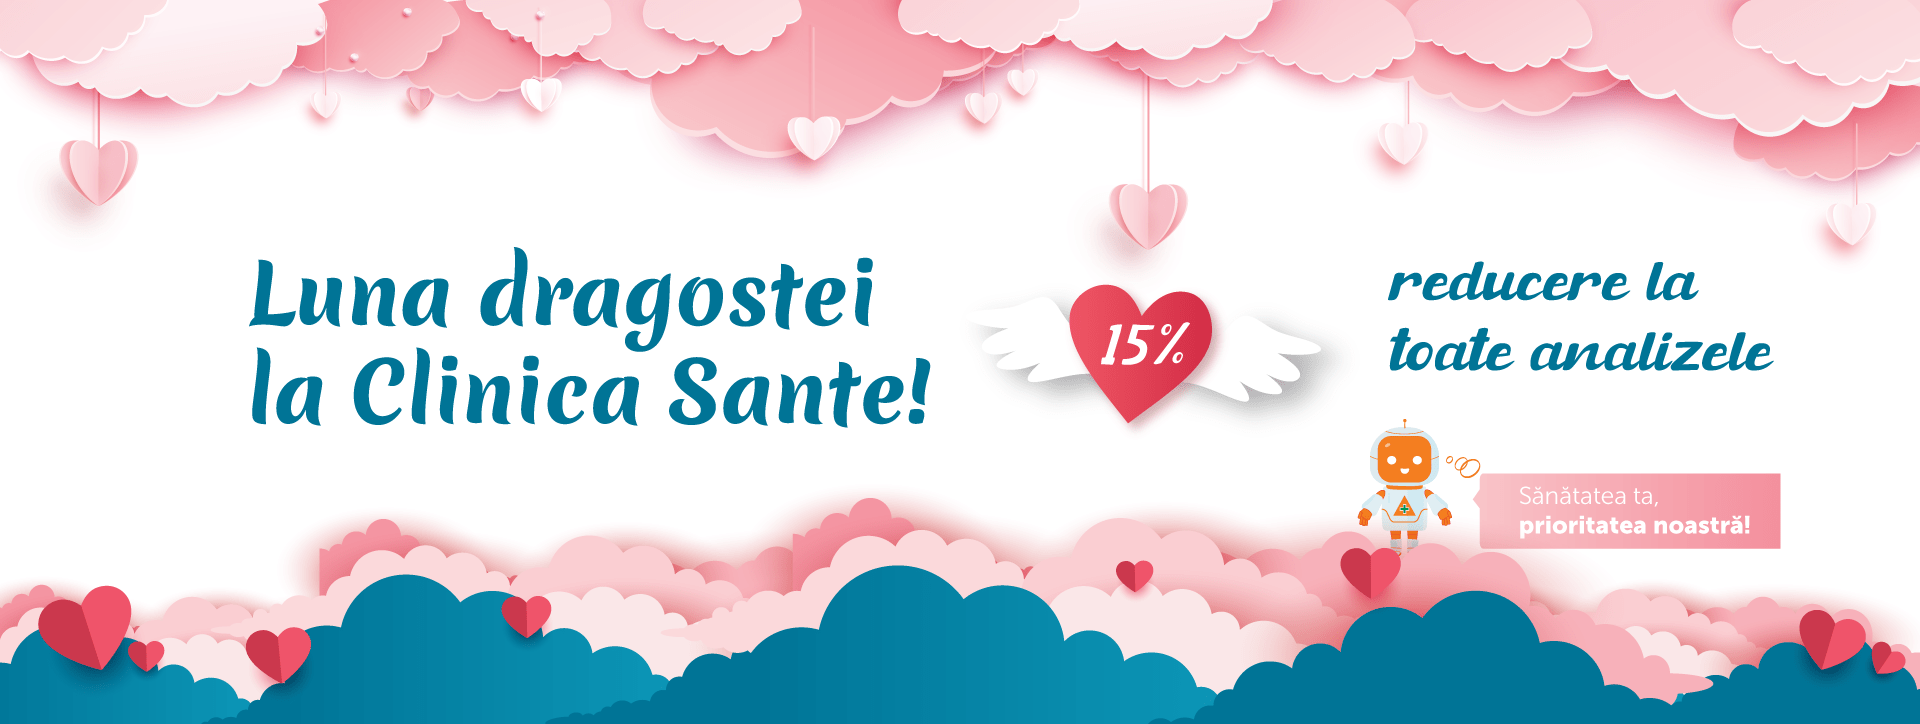 promo image Luna dragostei la Clinica Sante! -15% reducere la analize pentru toate cuplurile